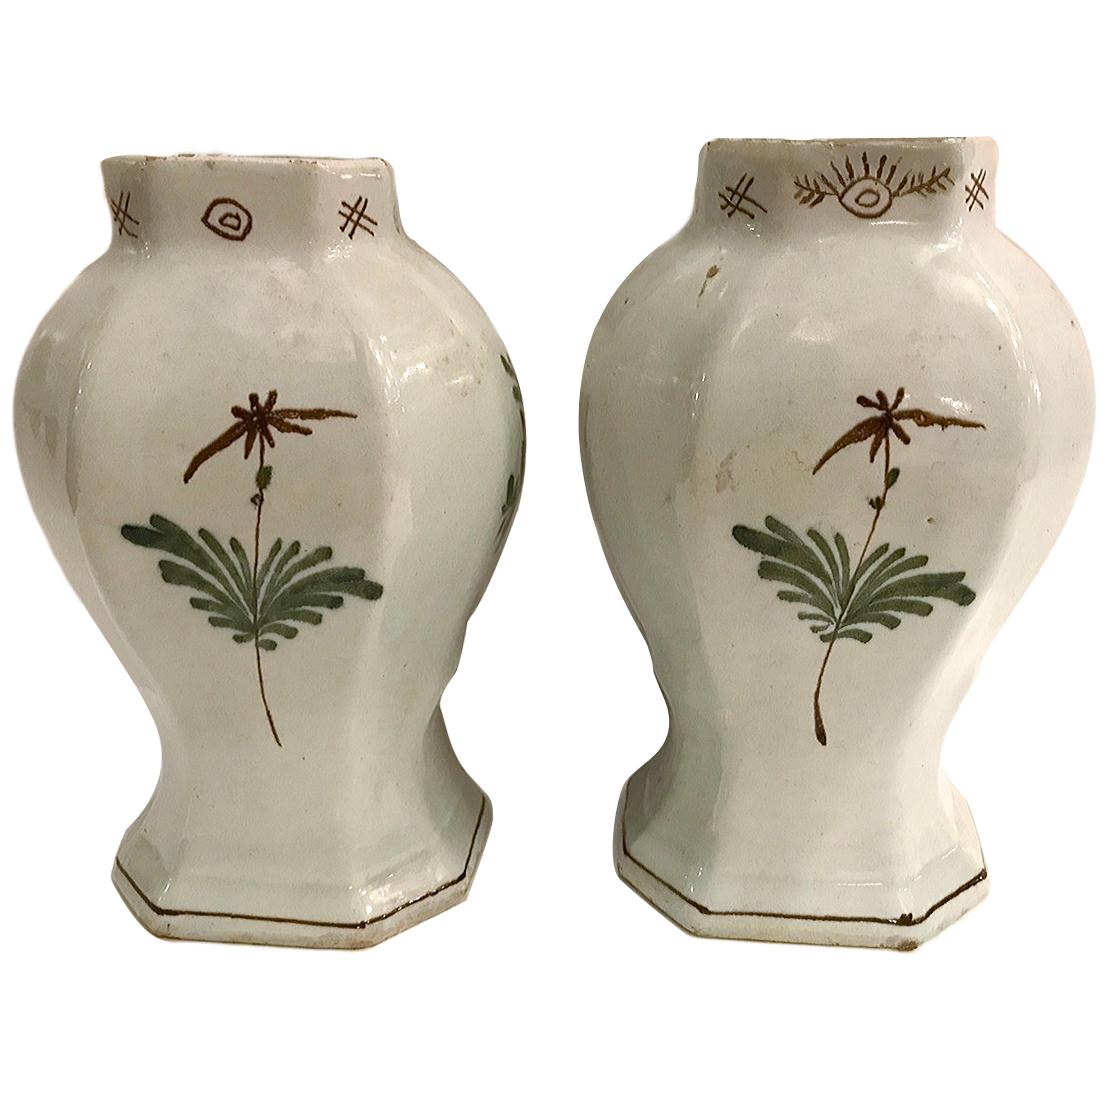 Ein Paar um 1900 handbemalte italienische Vasen.

Abmessungen:
Höhe: 8,5